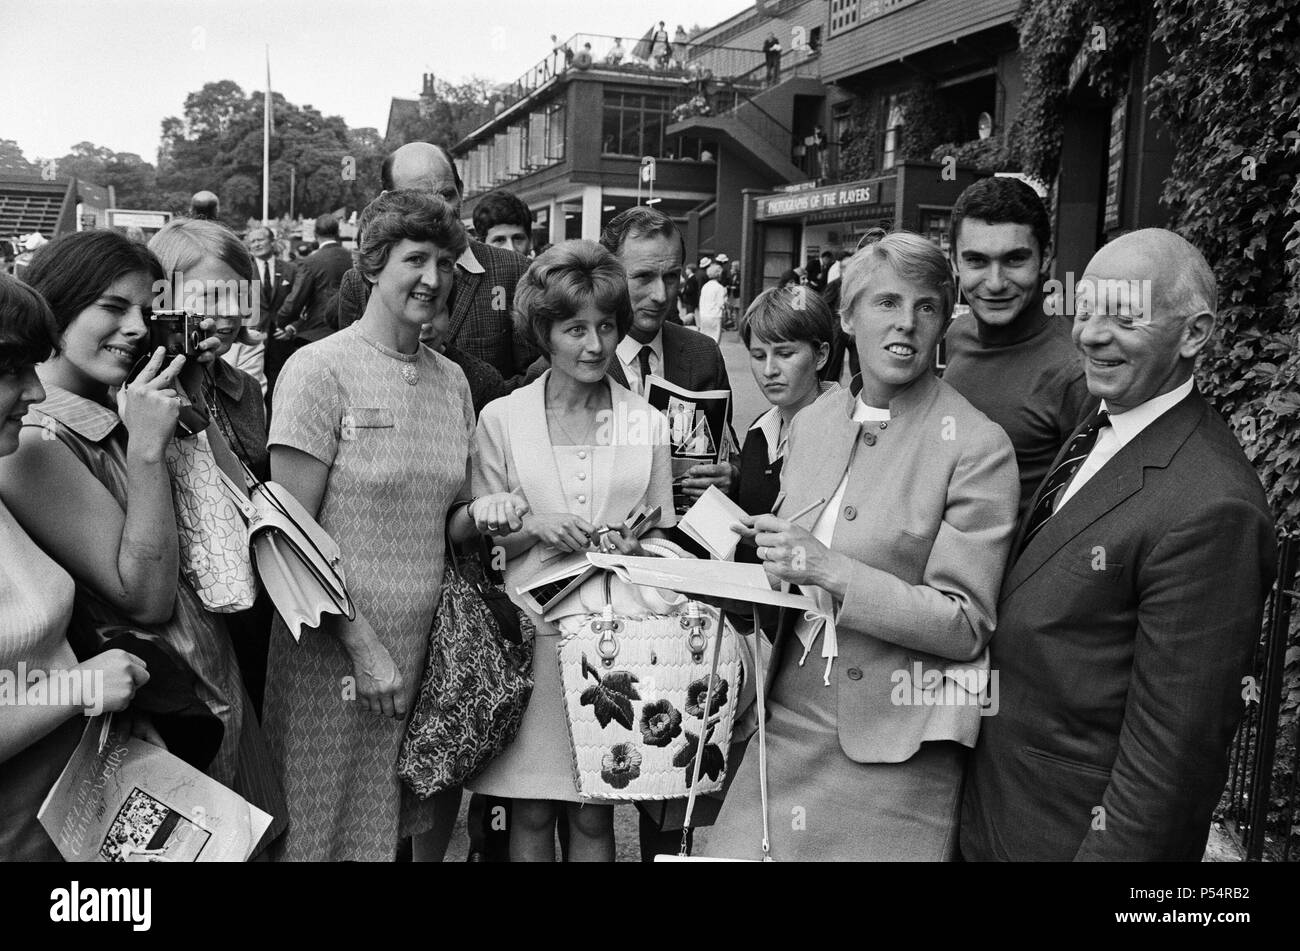 Joueur de tennis britannique Ann Jones (3e à partir de la droite), signe des autographes pour ses jeunes fans au Wimbledon Tennis Championships de 1967. Photo prise le 7 juillet 1967 Banque D'Images